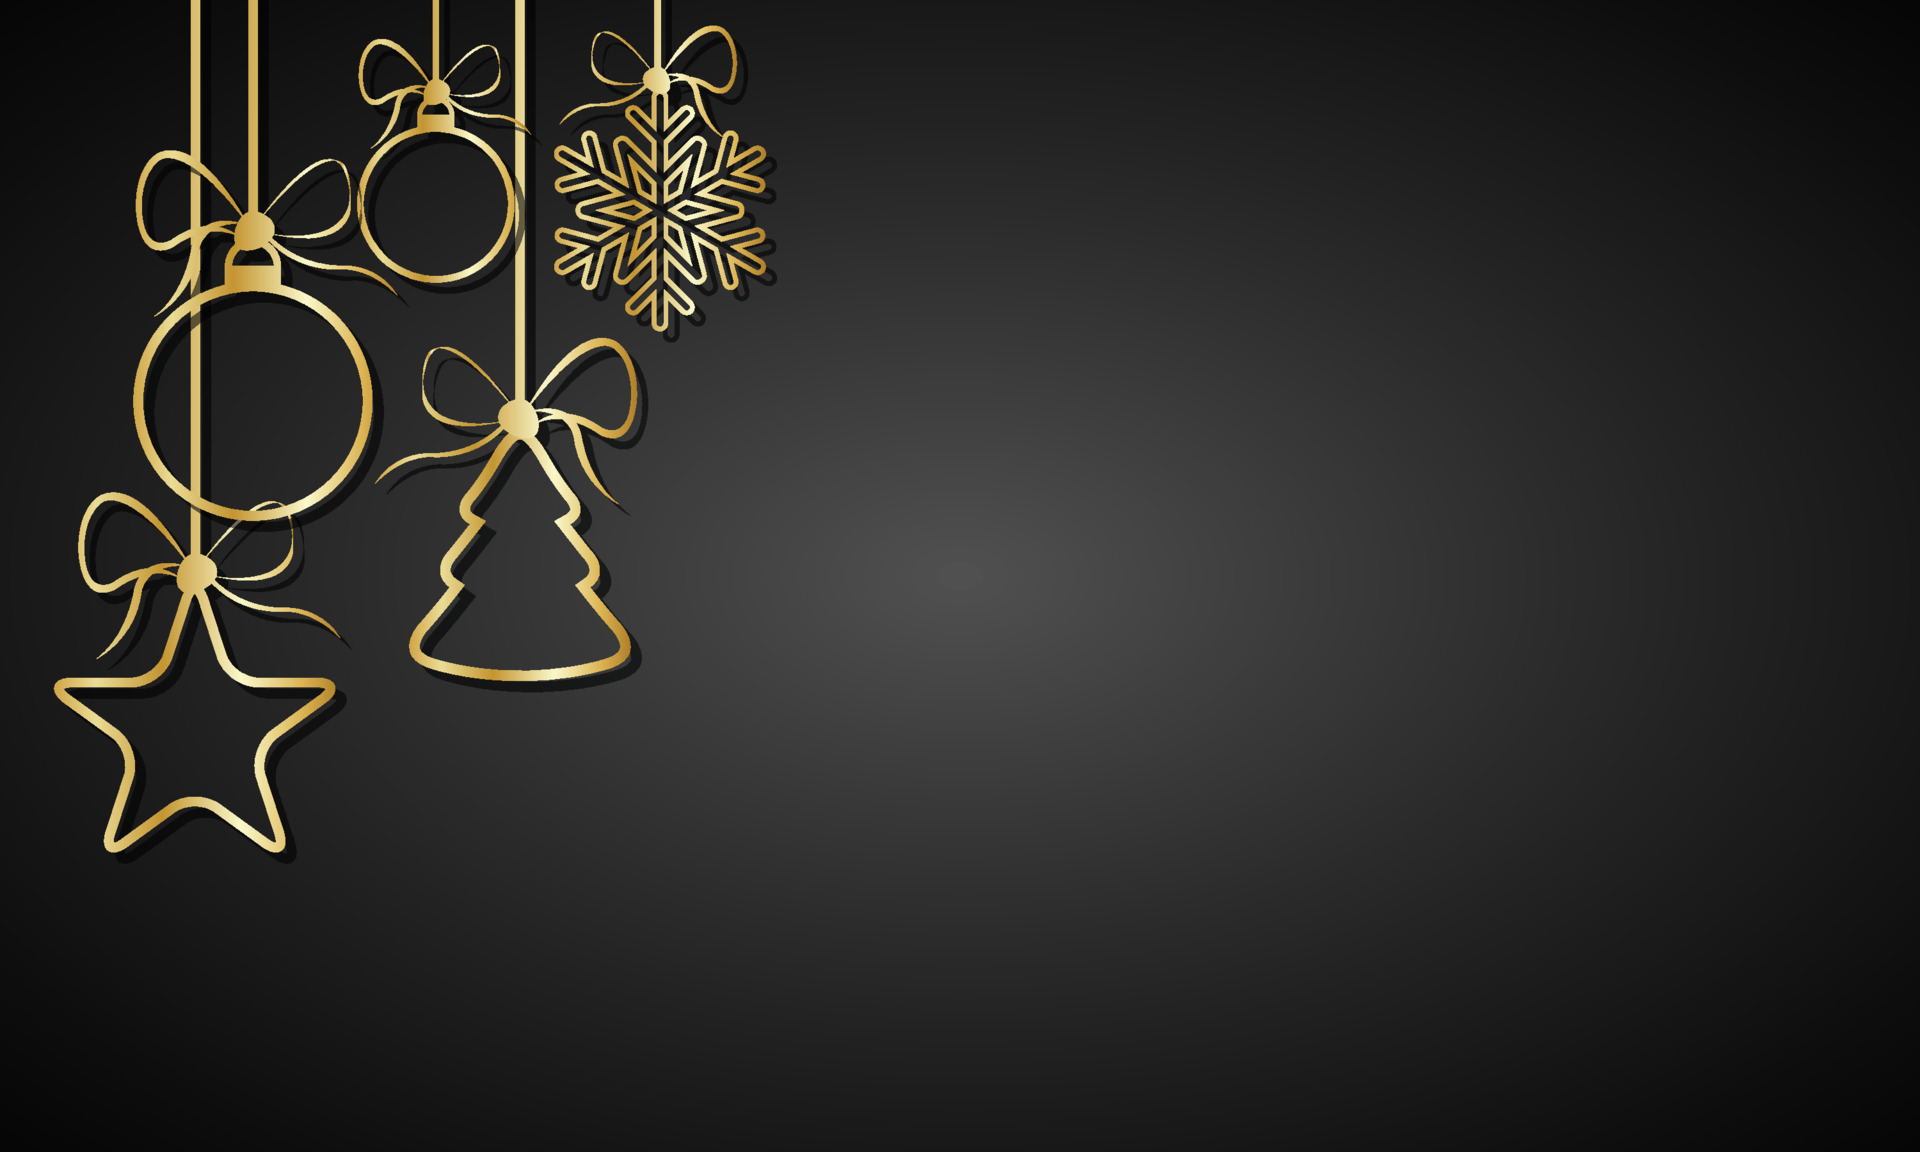 Bức ảnh với nền đen và vàng lấp lánh đầy bóng đèn Noel sẽ đưa bạn vào không khí đón Giáng sinh ấm áp và rực rỡ. Hãy cùng thưởng thức bức ảnh này và bắt đầu chuẩn bị cho một mùa lễ hội tràn ngập niềm vui và hạnh phúc.